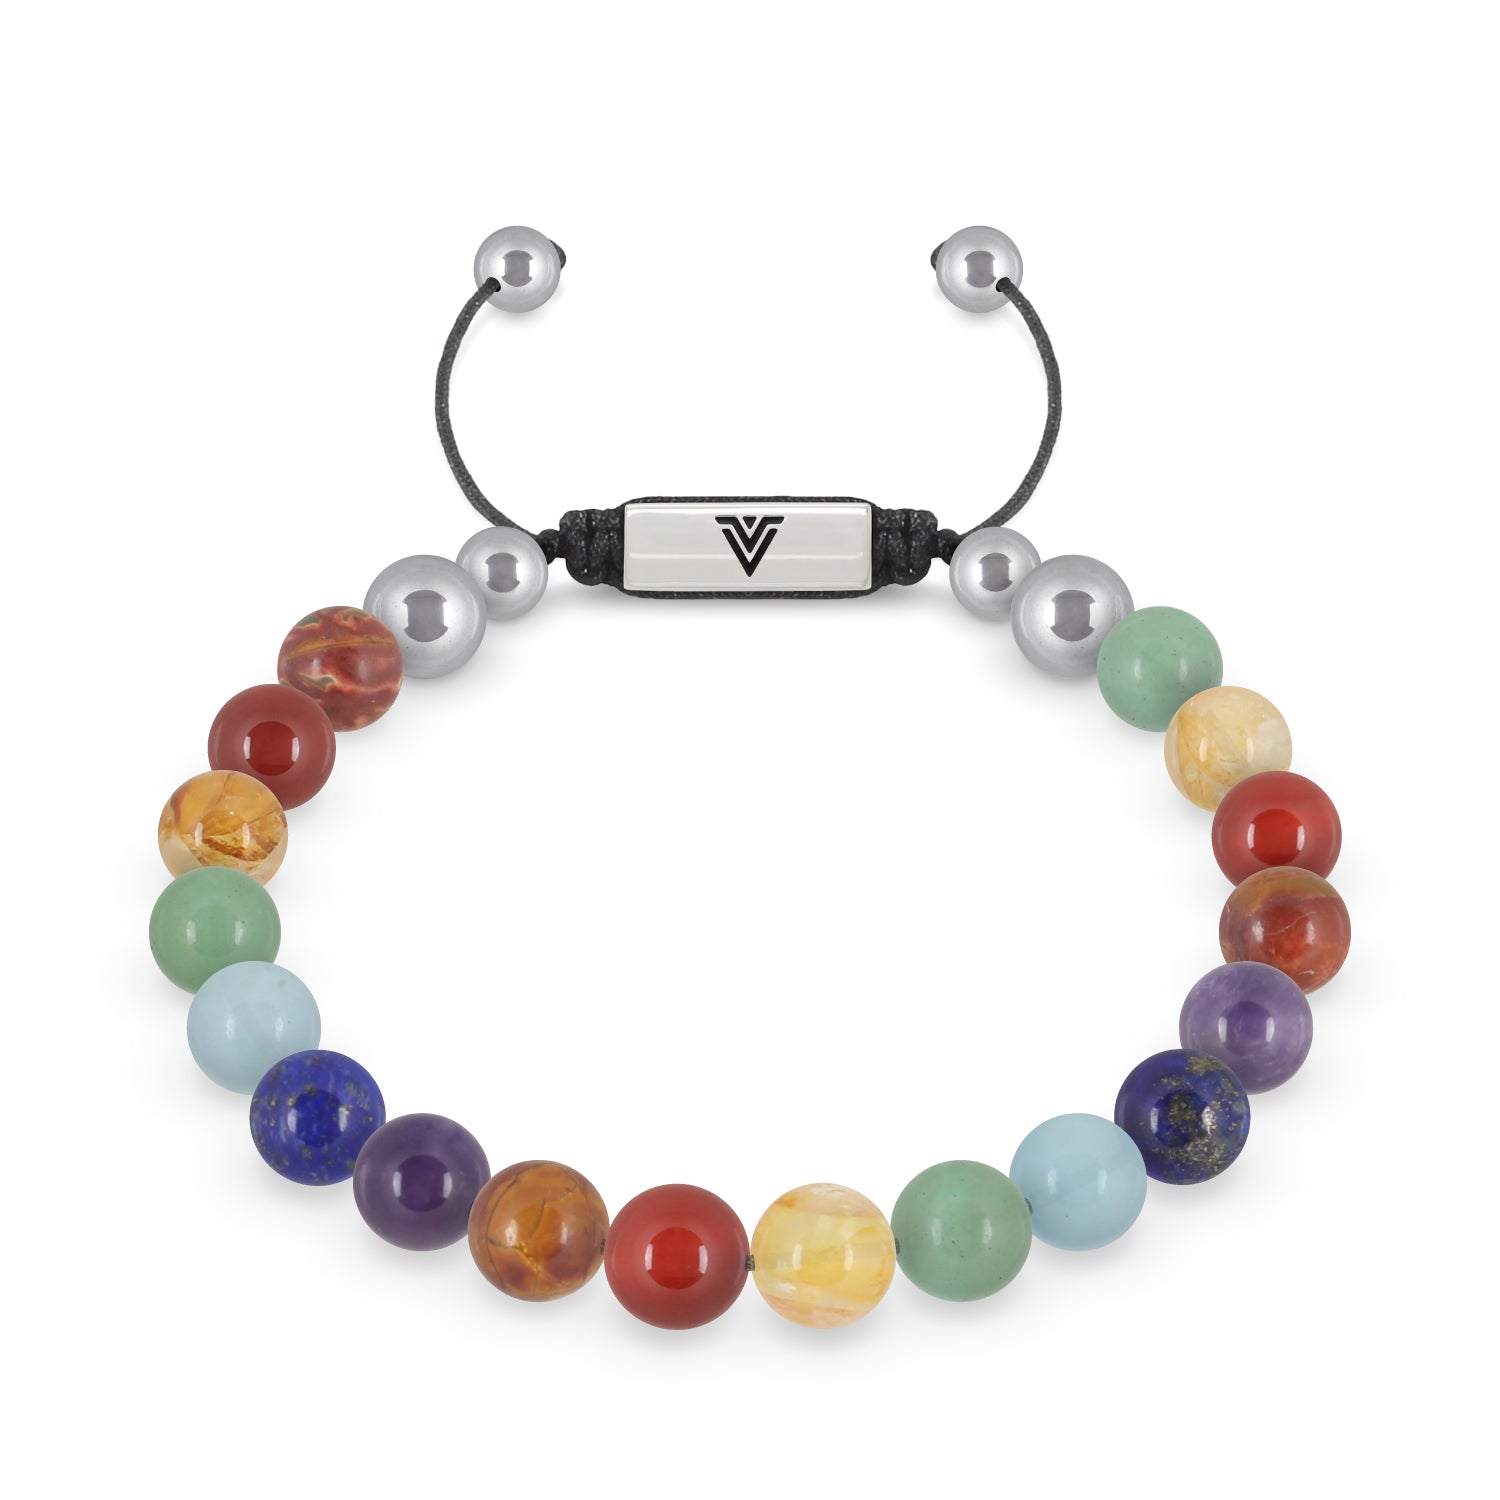 Shamballa bracelet stock photo. Image of jewelery, buddhism - 30040152